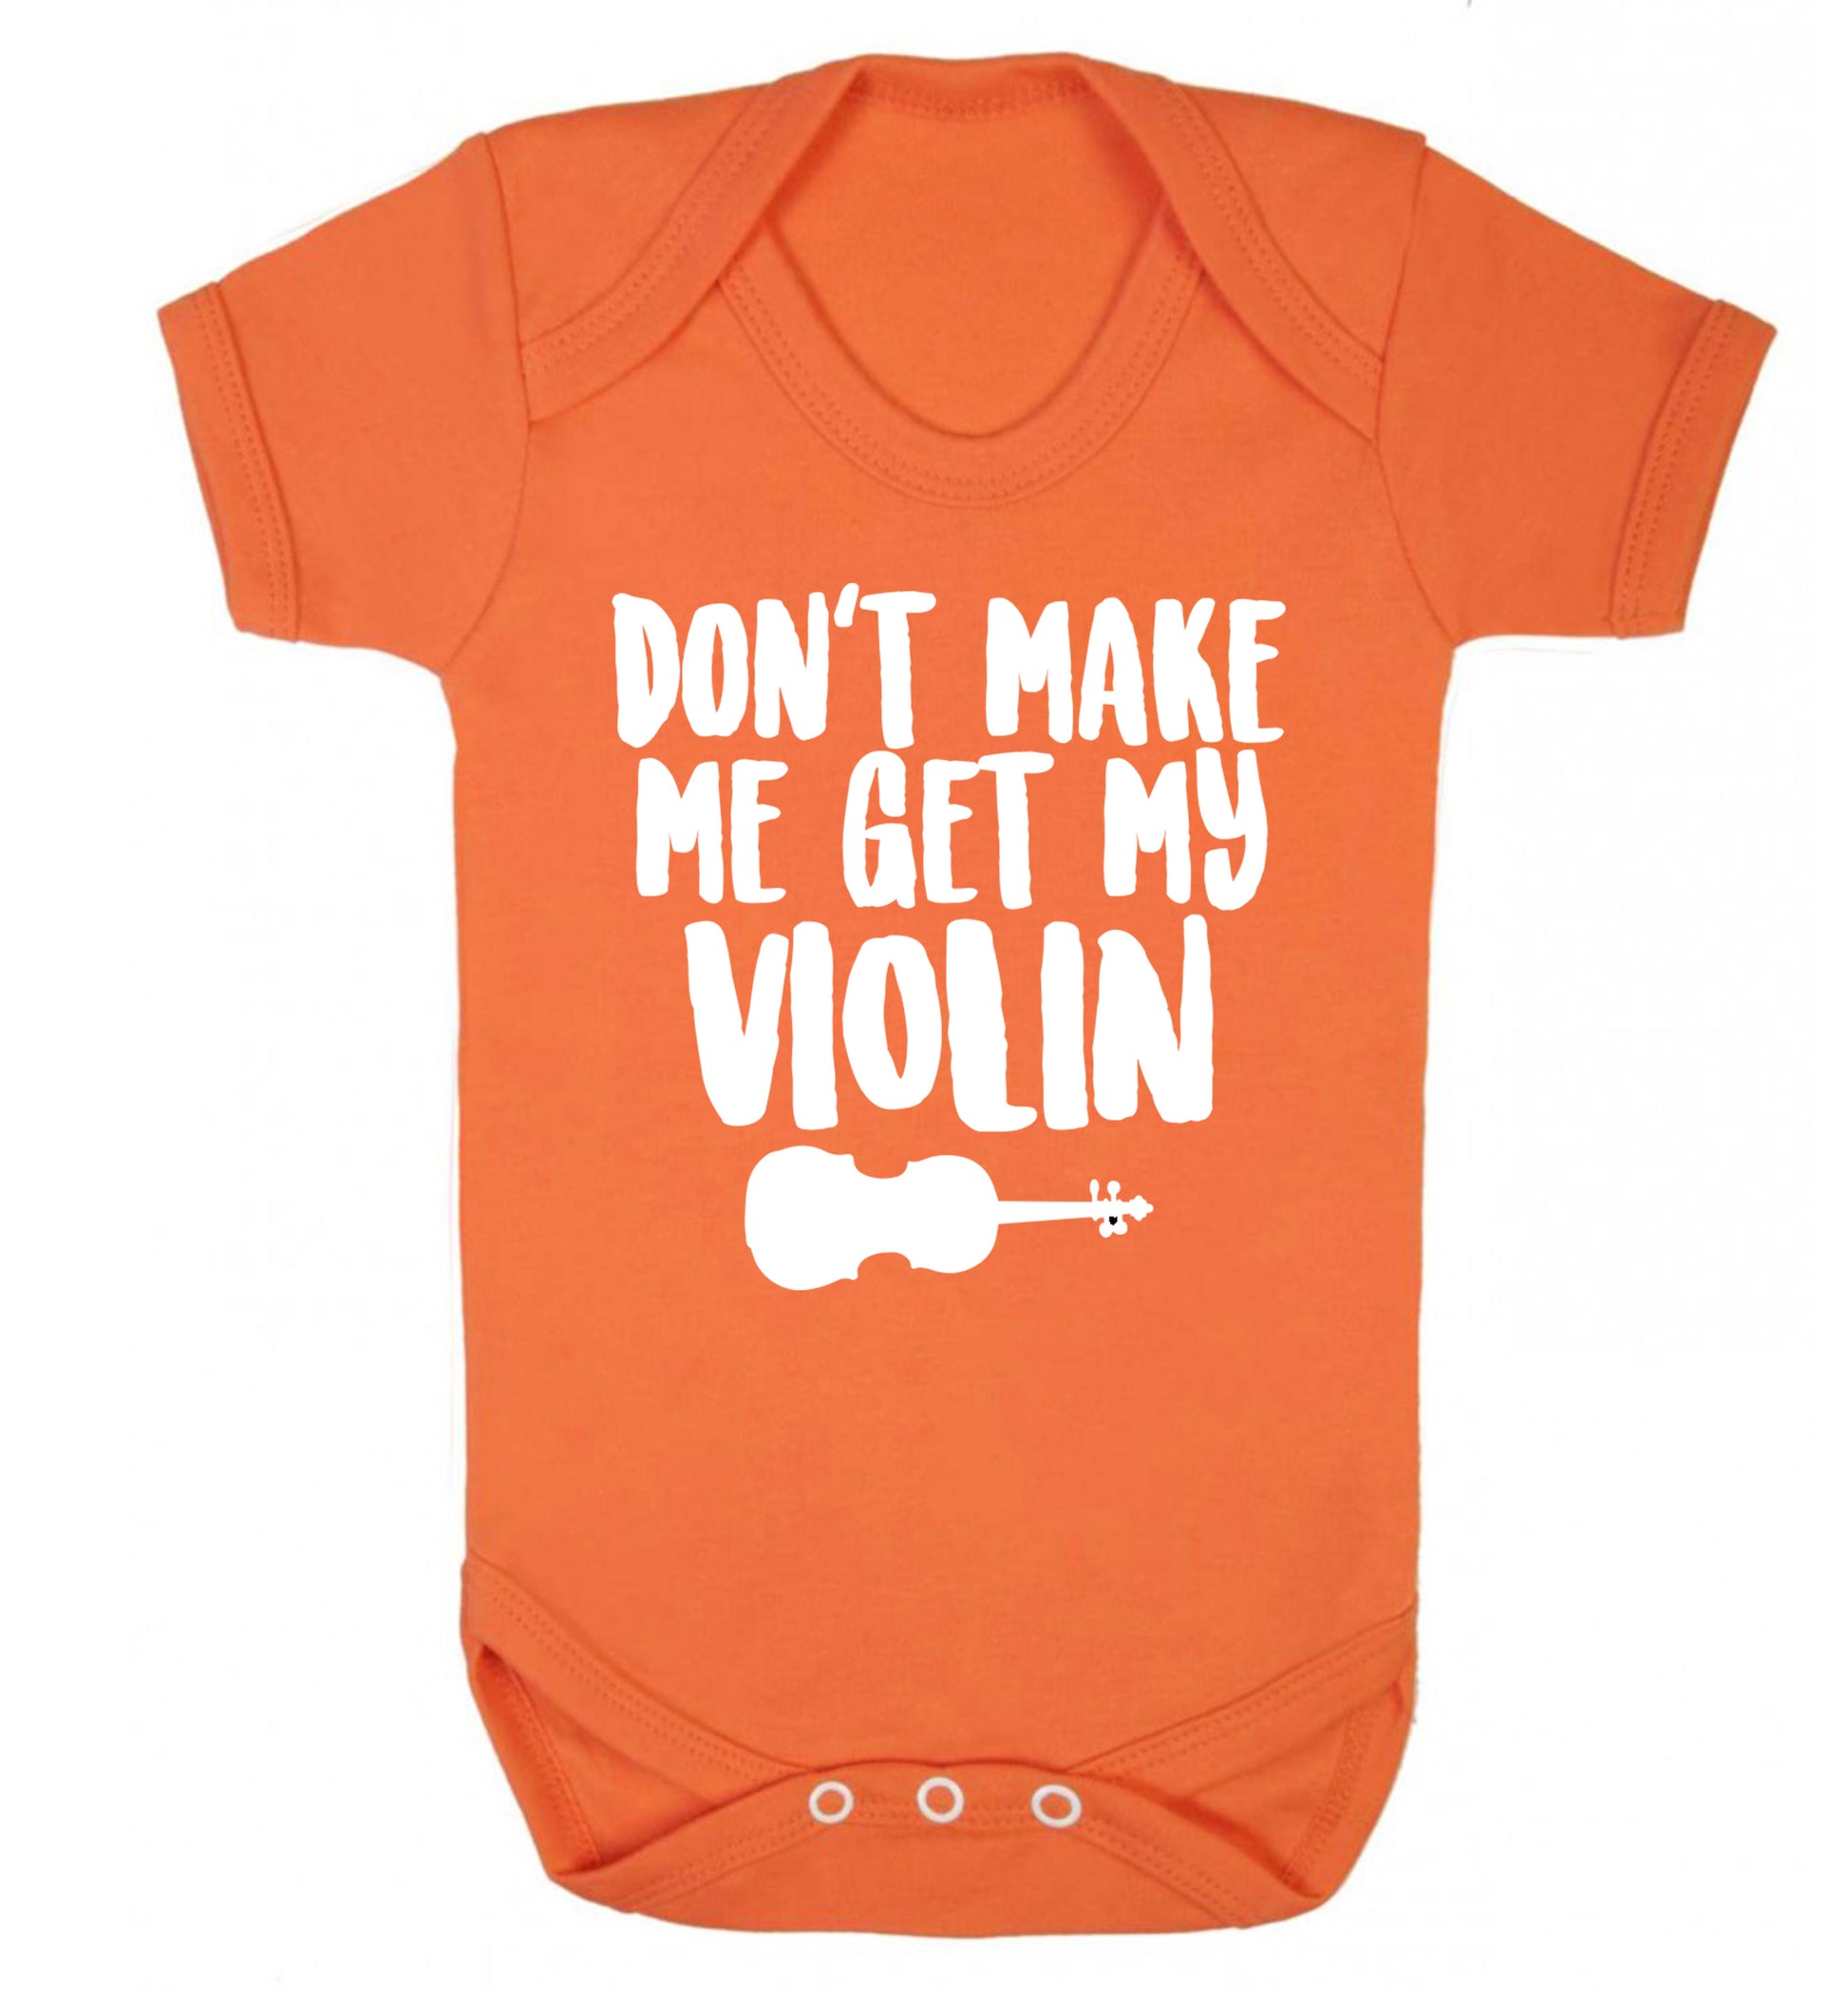 Don't make me get my violin Baby Vest orange 18-24 months